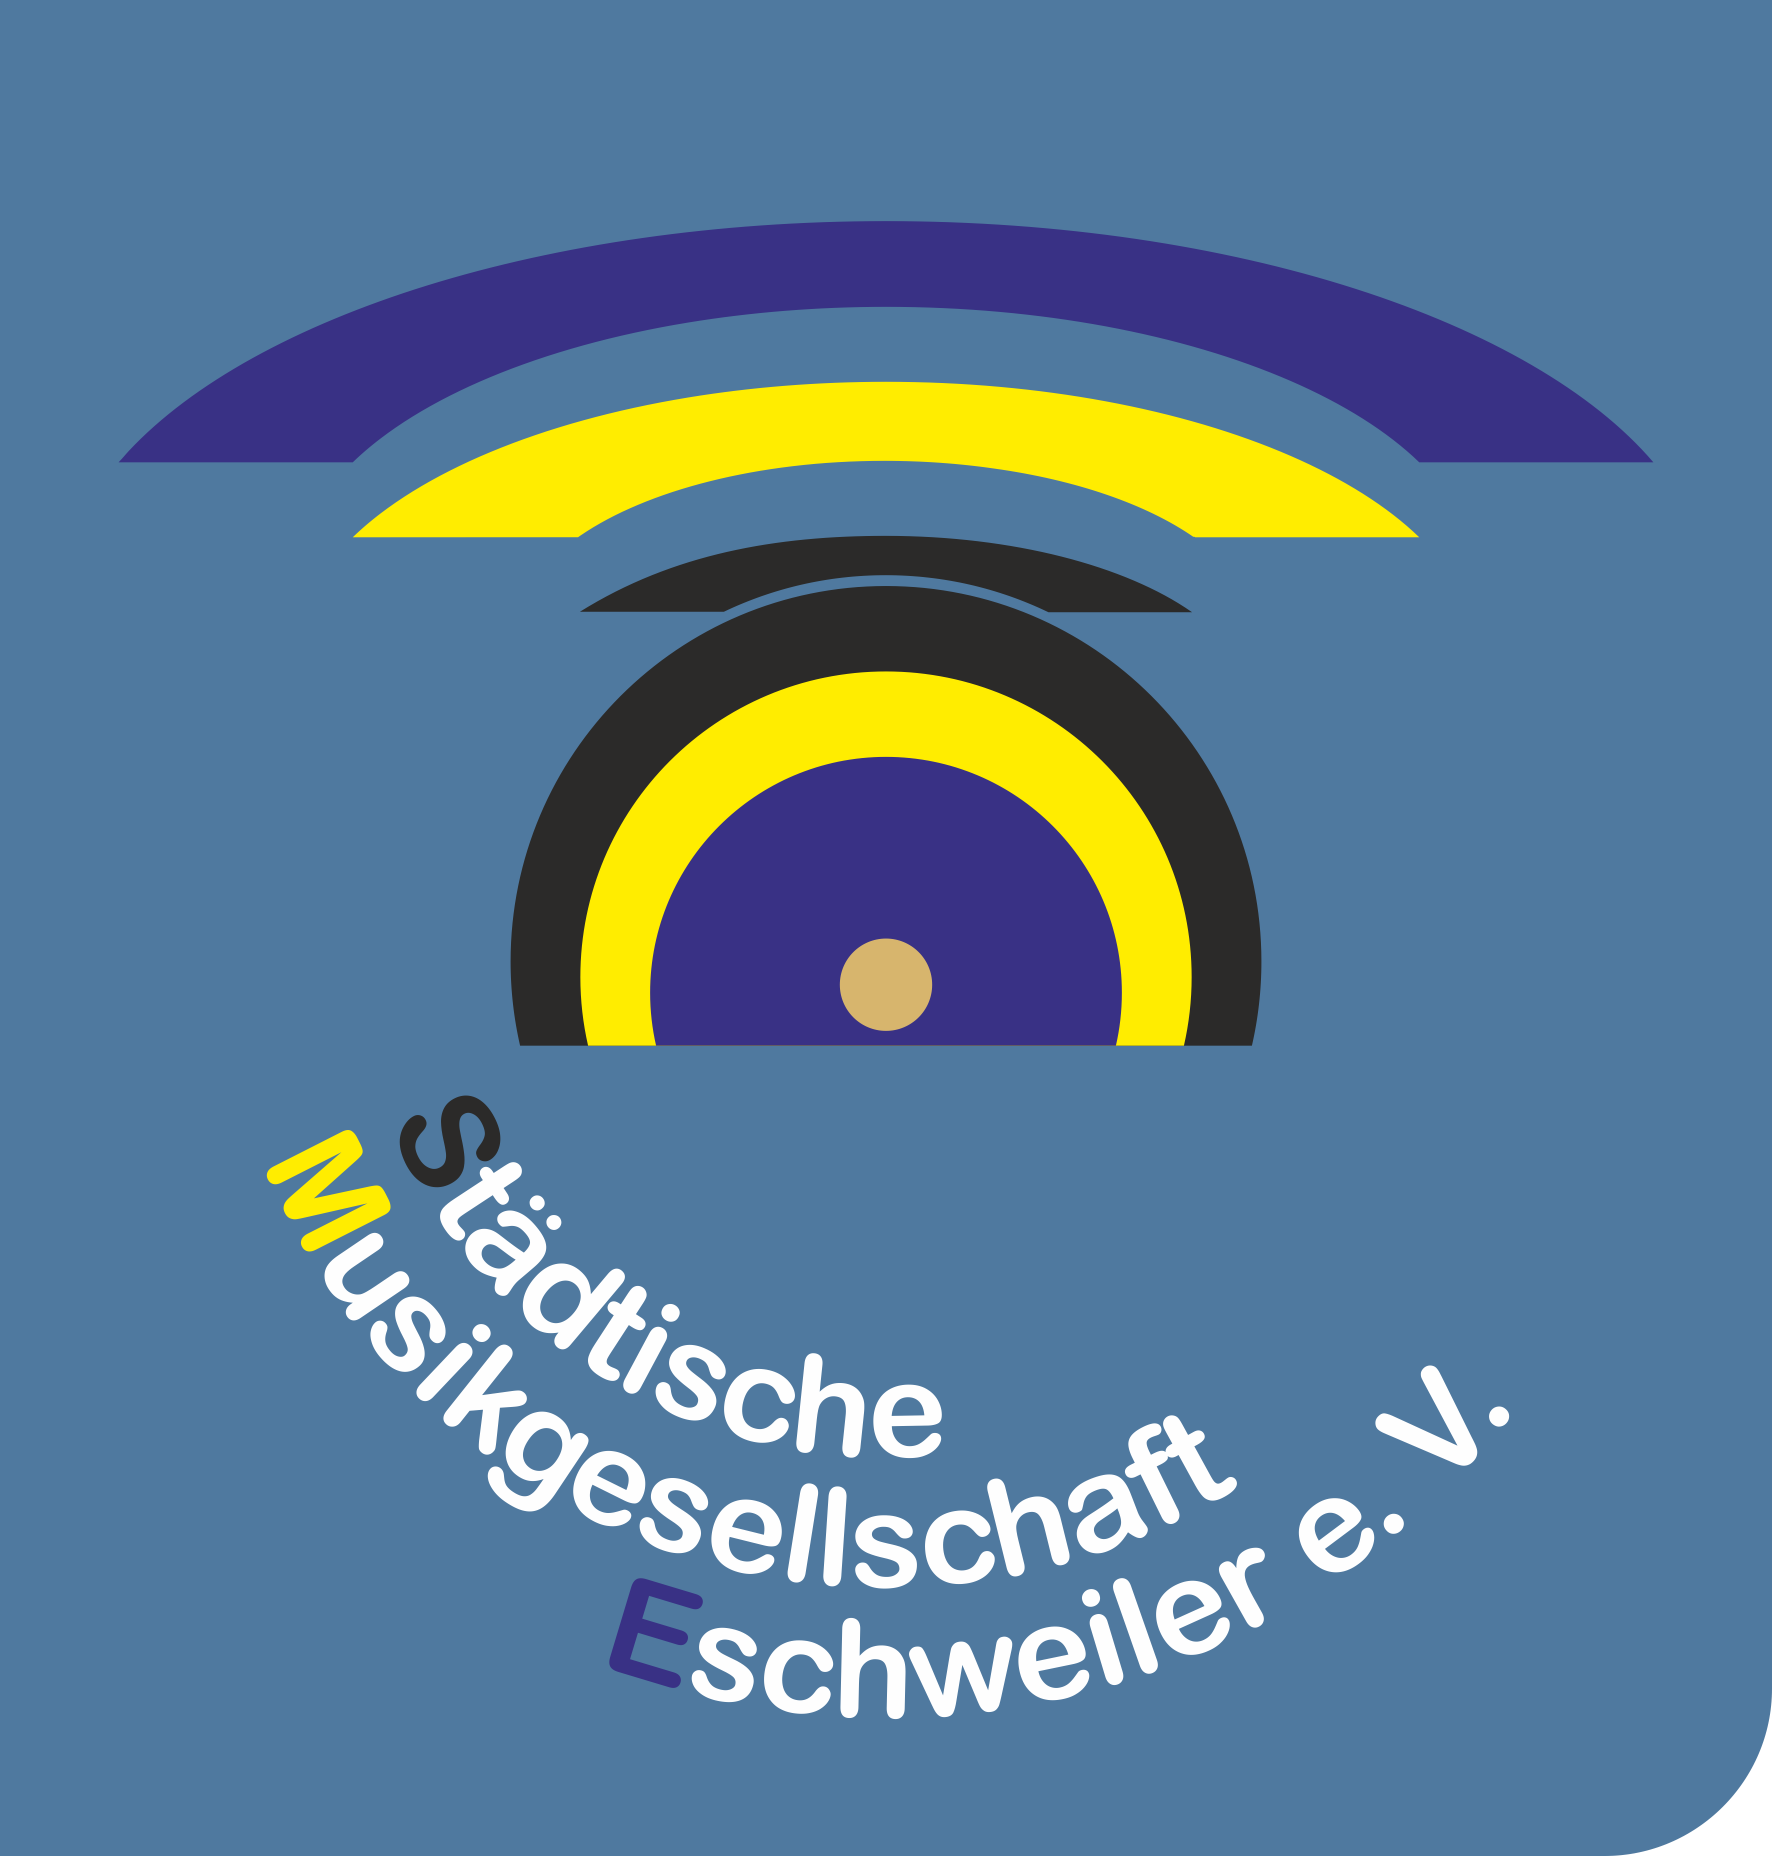 Städtische Musikgesellschaft Eschweiler